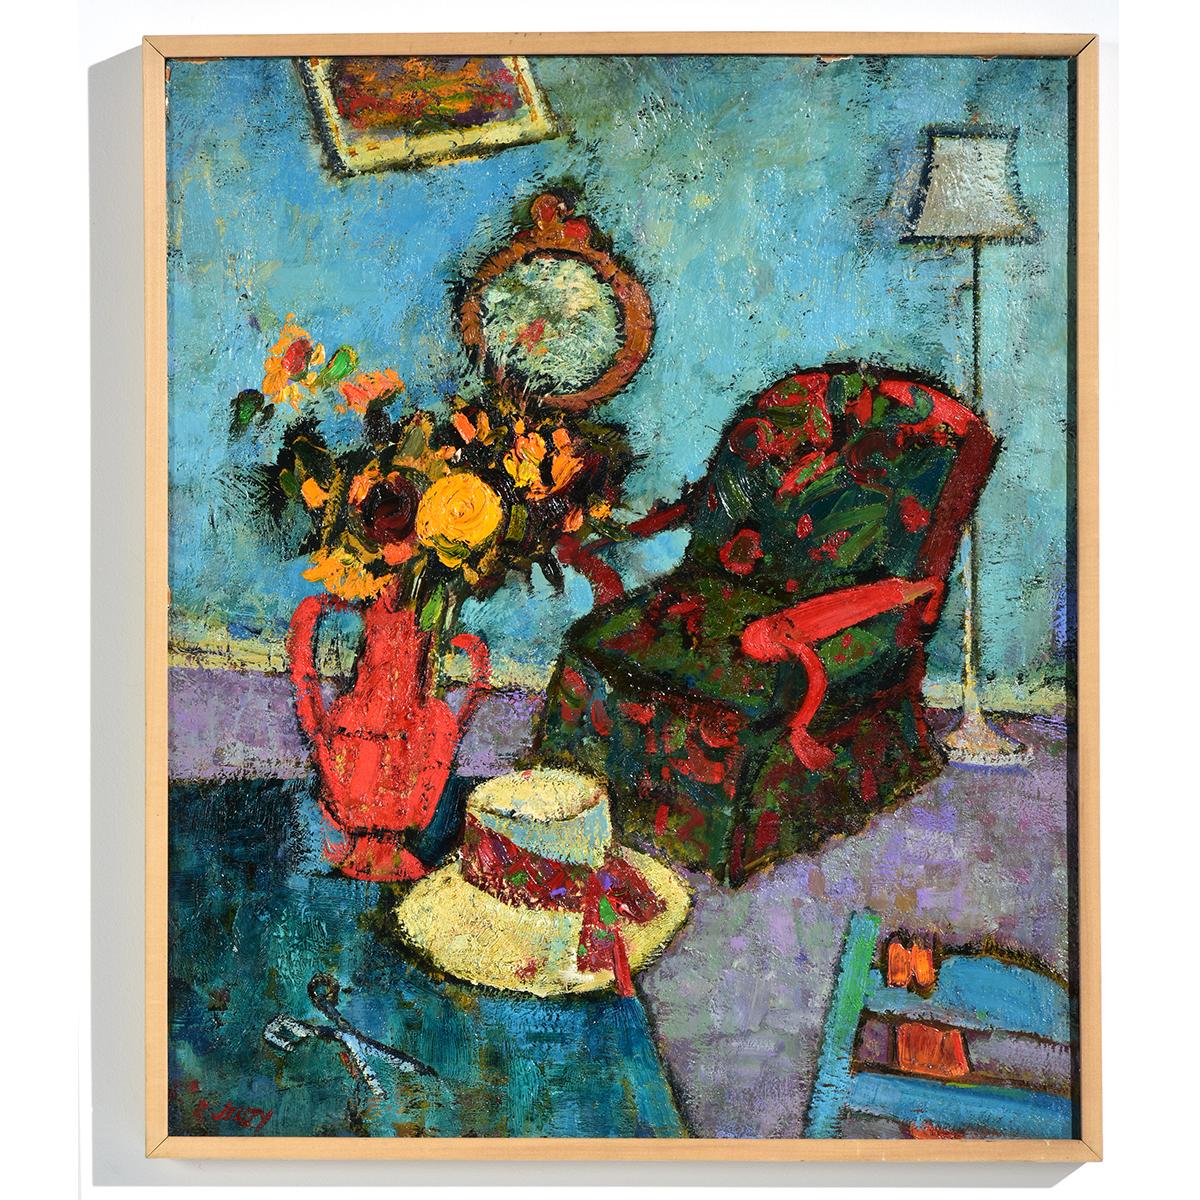 "Red Chair", bien qu'il s'agisse d'une scène d'intérieur, est agencée comme une nature morte avec les meubles et les objets légèrement décalés à la manière créative des intérieurs de Marc Chagall, l'artiste russo-français d'origine juive biélorusse.